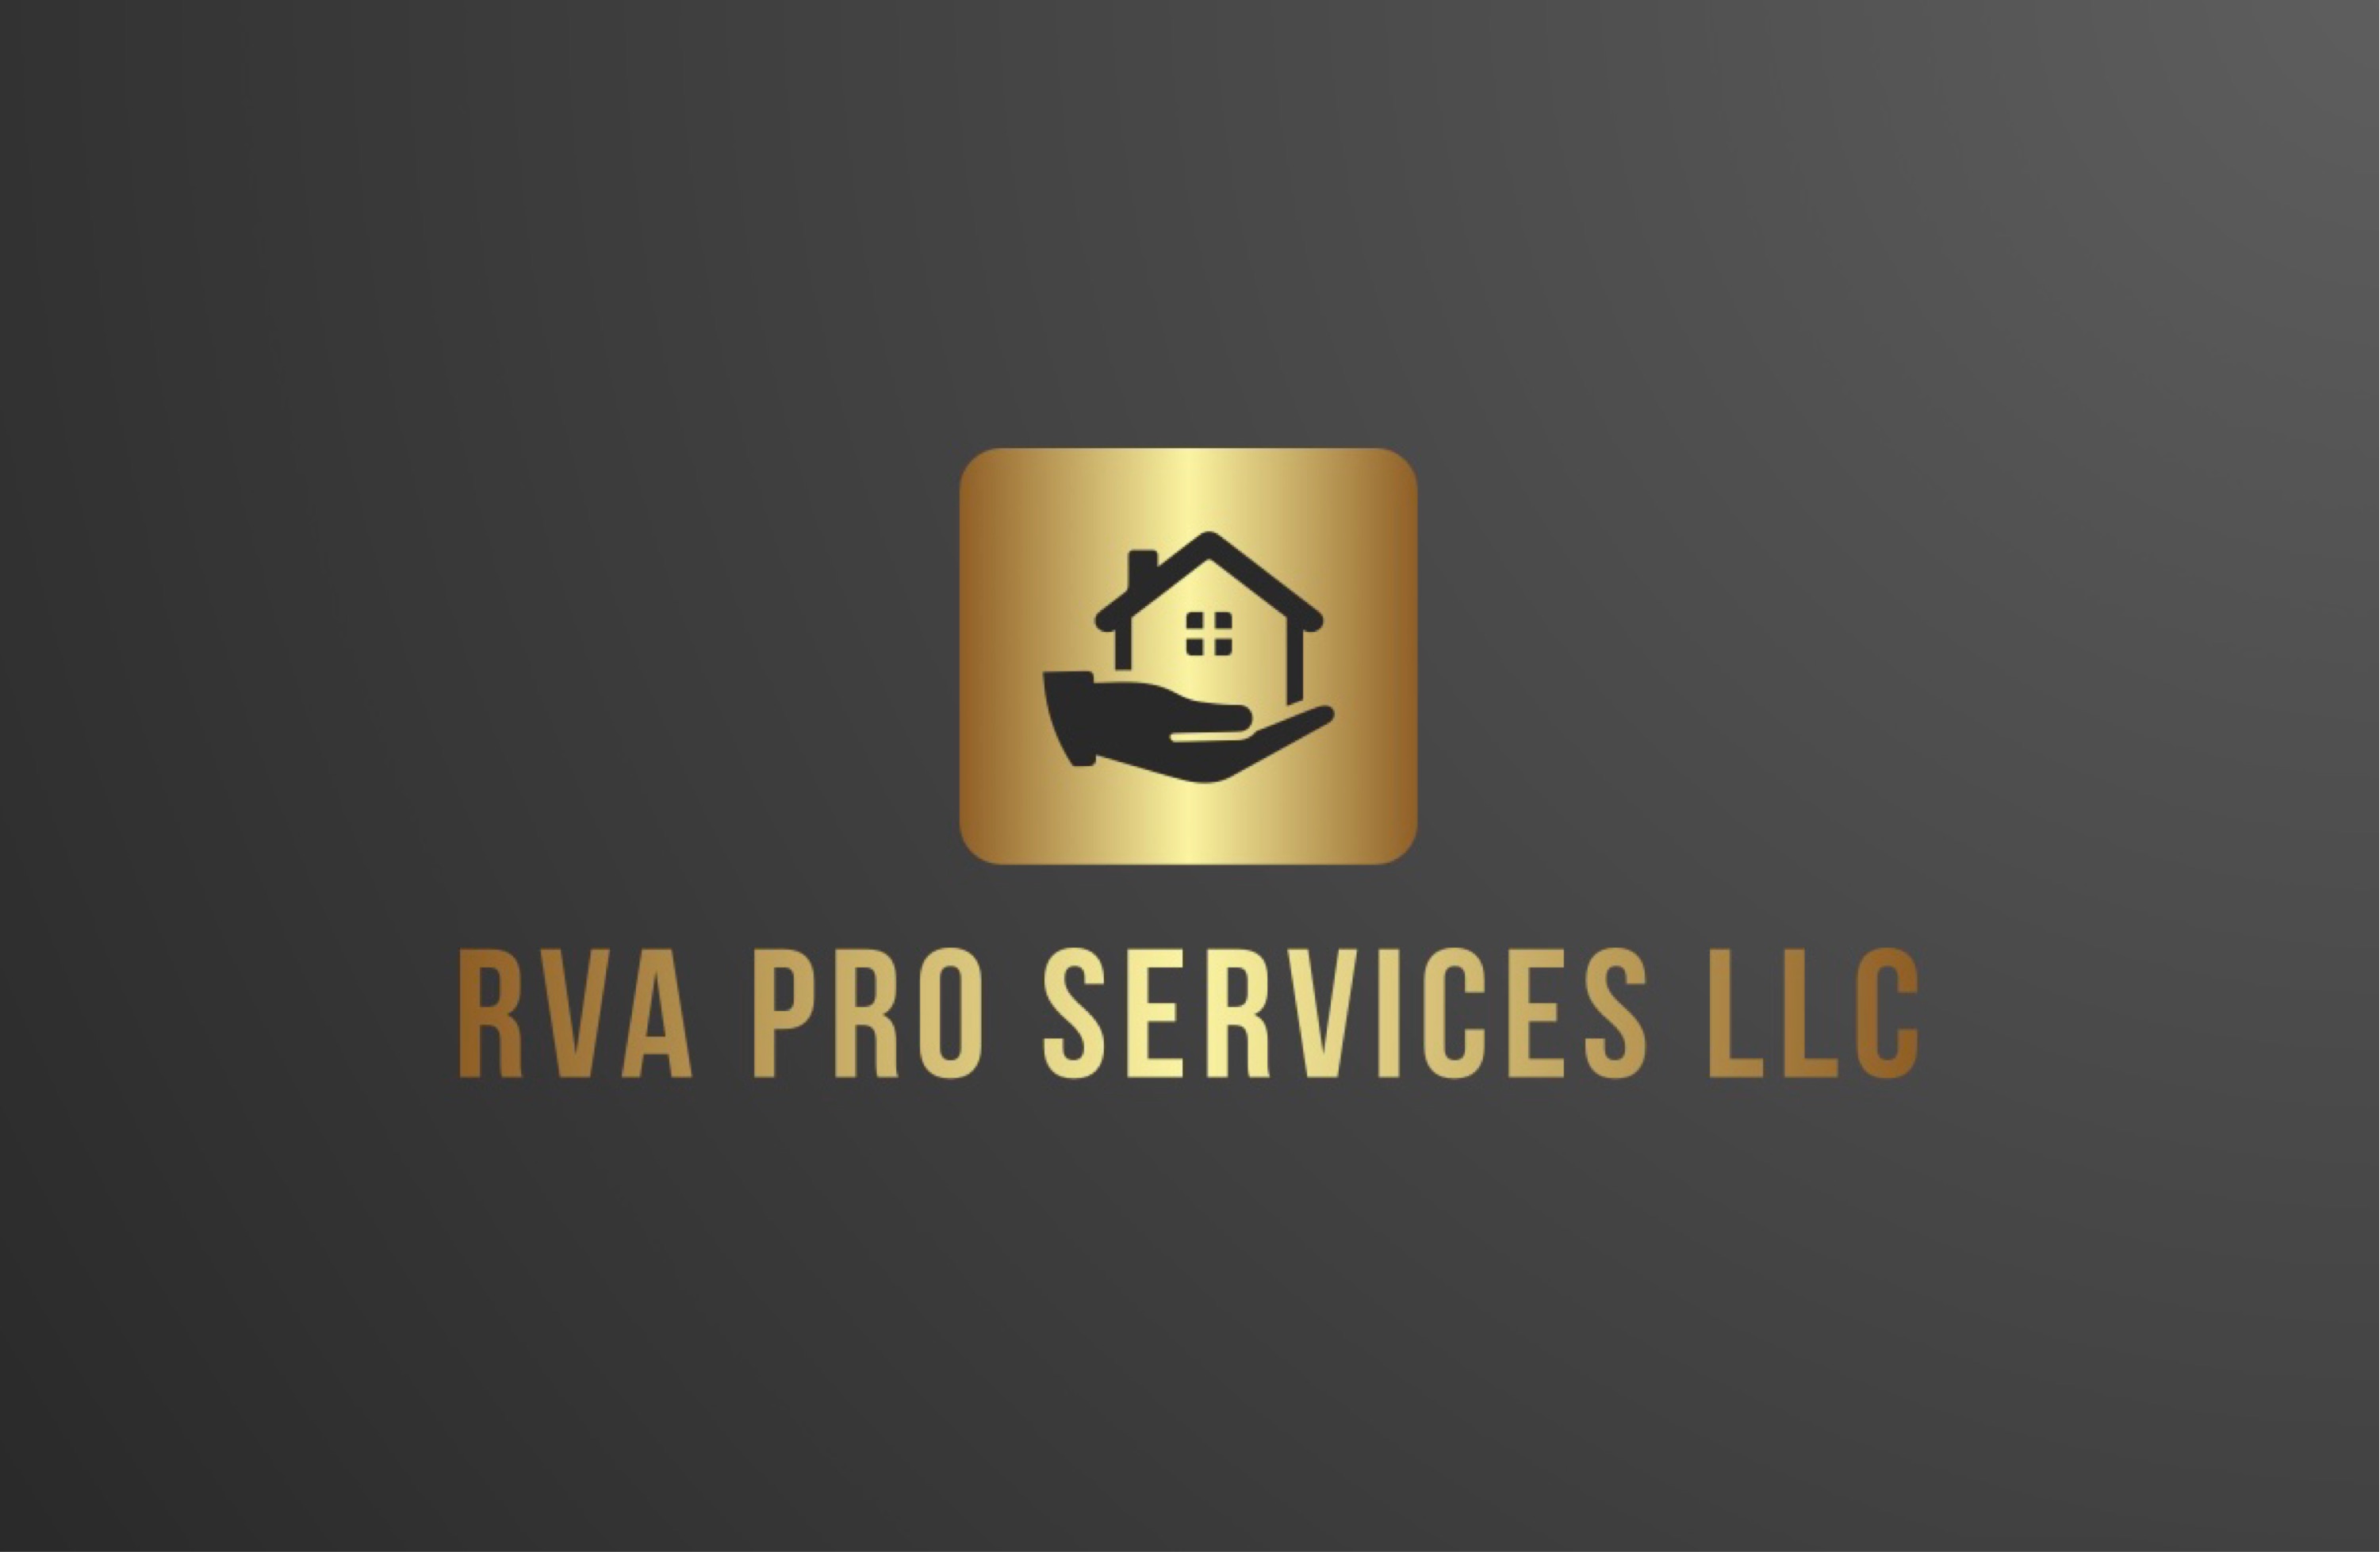 RVA Pro Services Logo